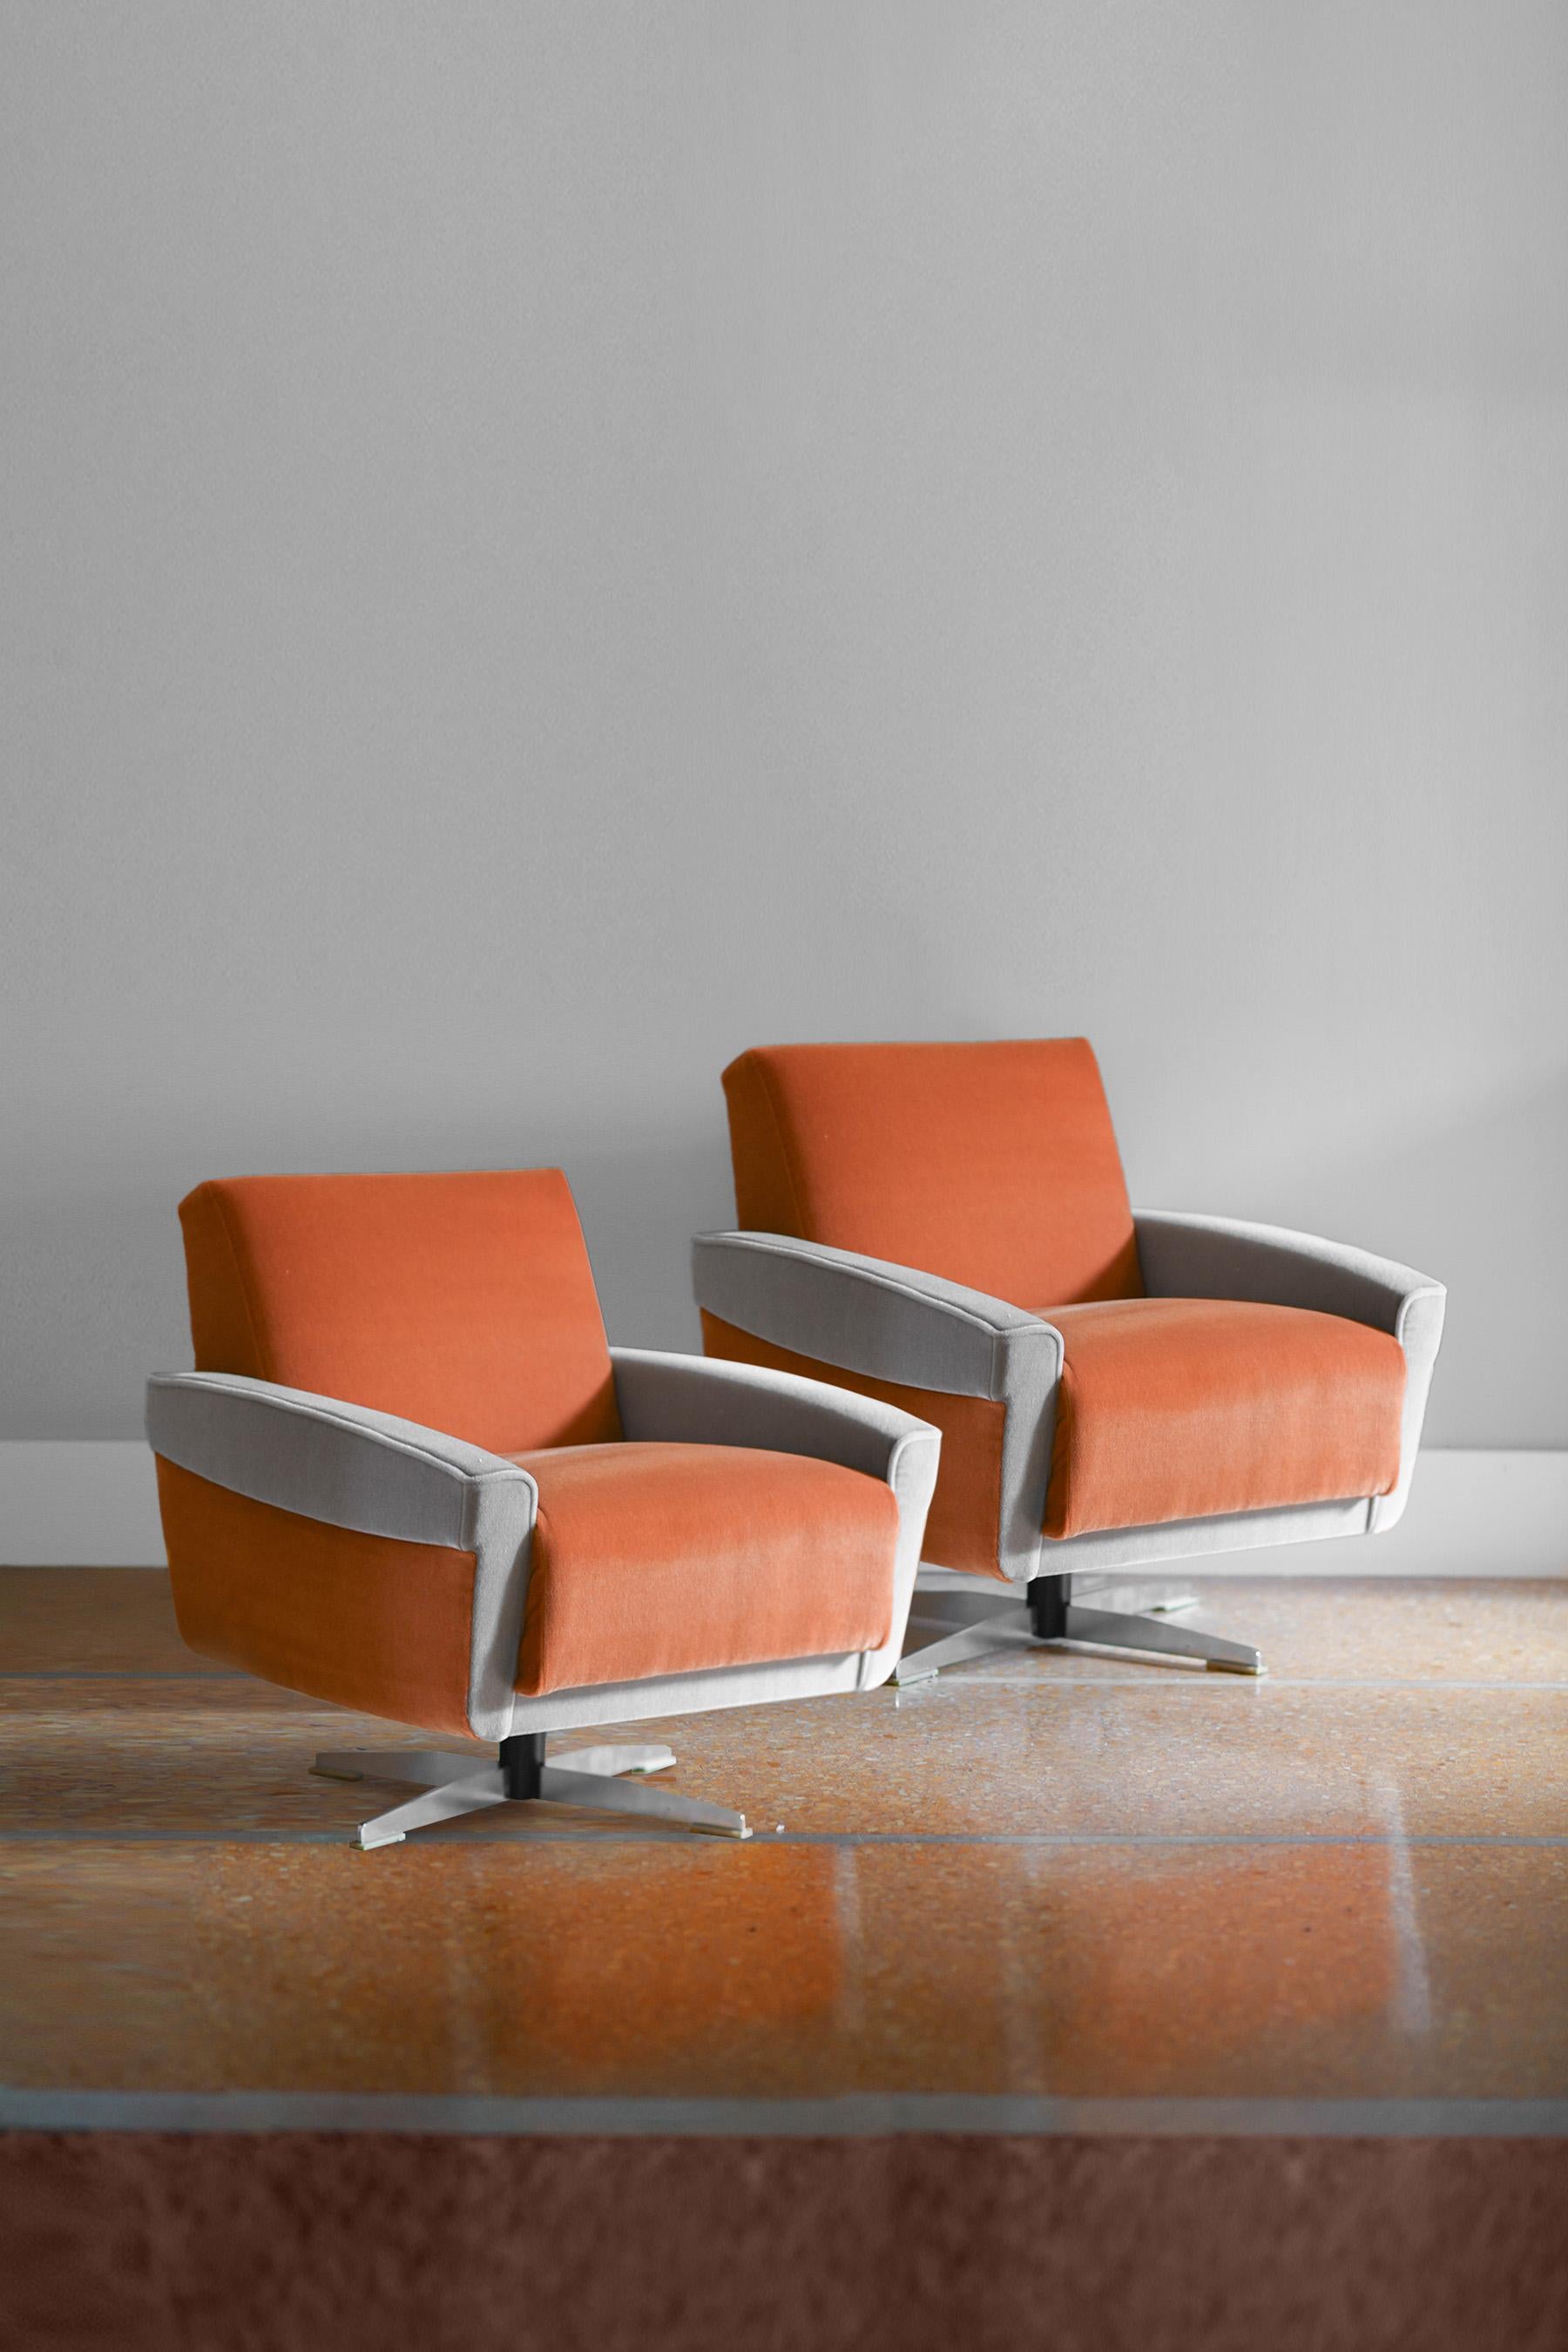 Paire de fauteuils pivotants des années 1960 recouverts de tissu Dedar
Dimensions du fauteuil simple : 75 L x 77 H x 75 D cm
Vendu par lot de 2.